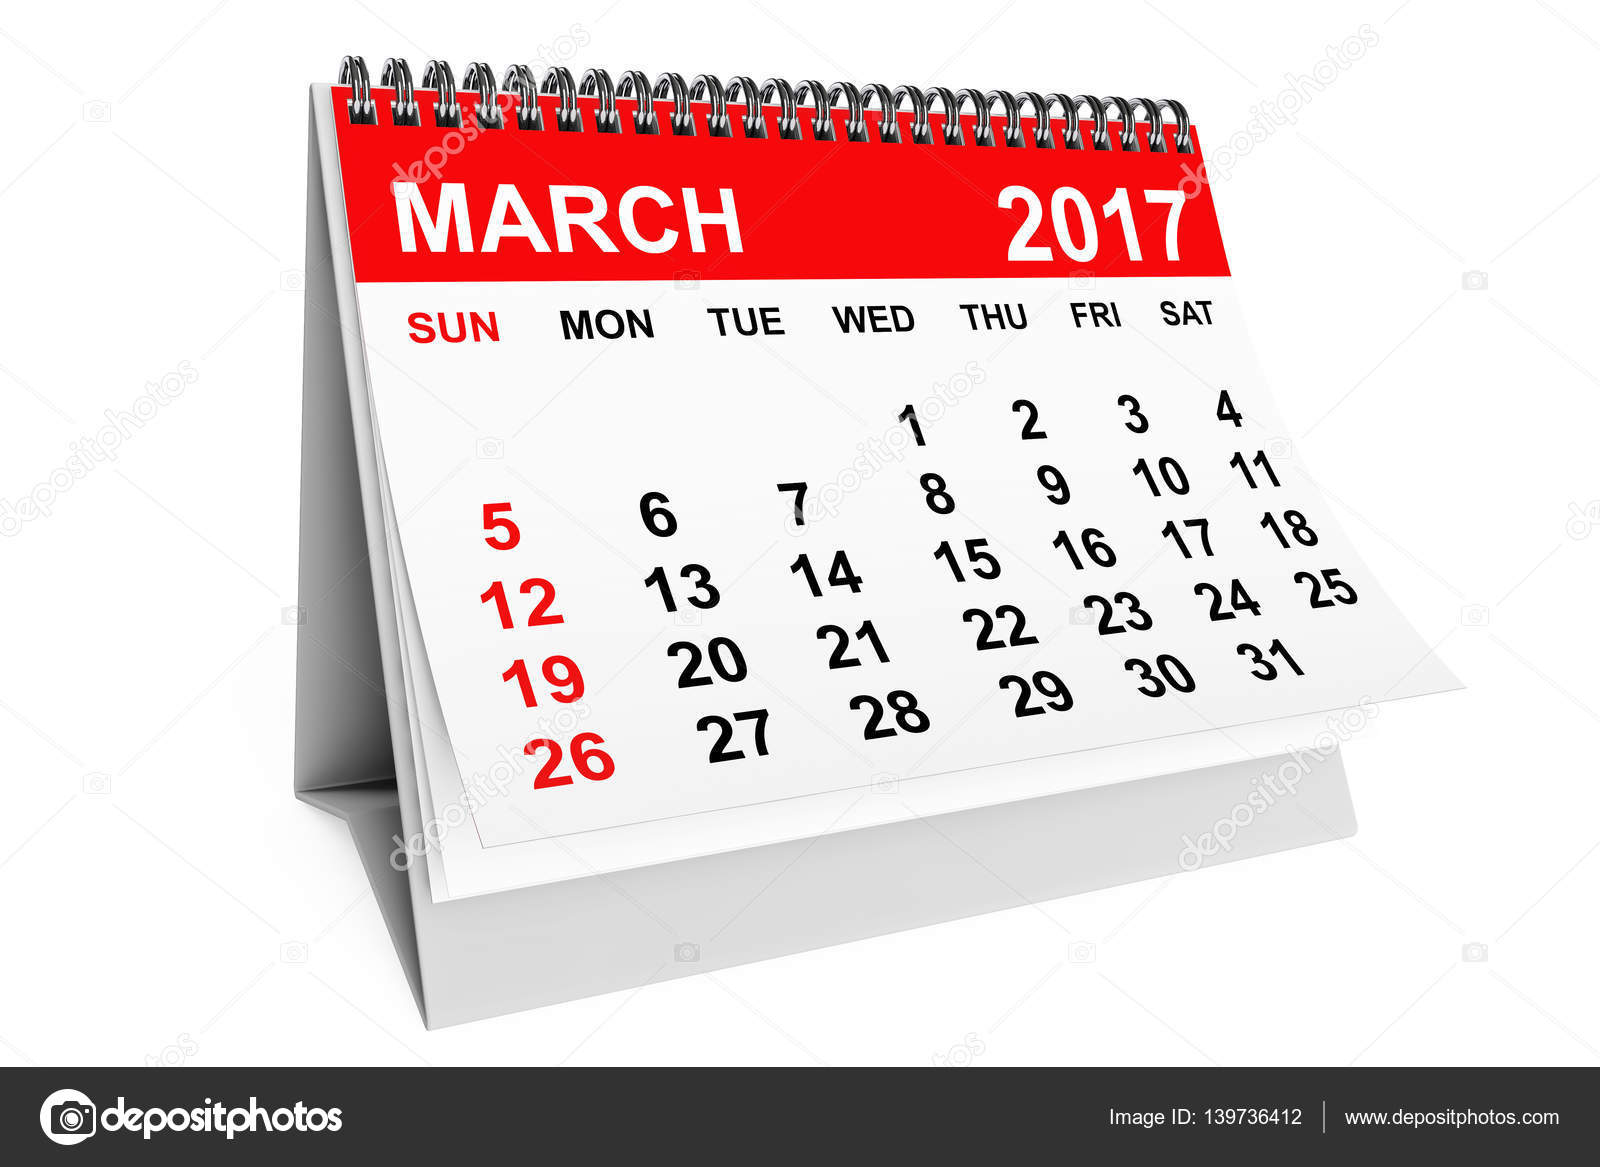 march-2017-calendar